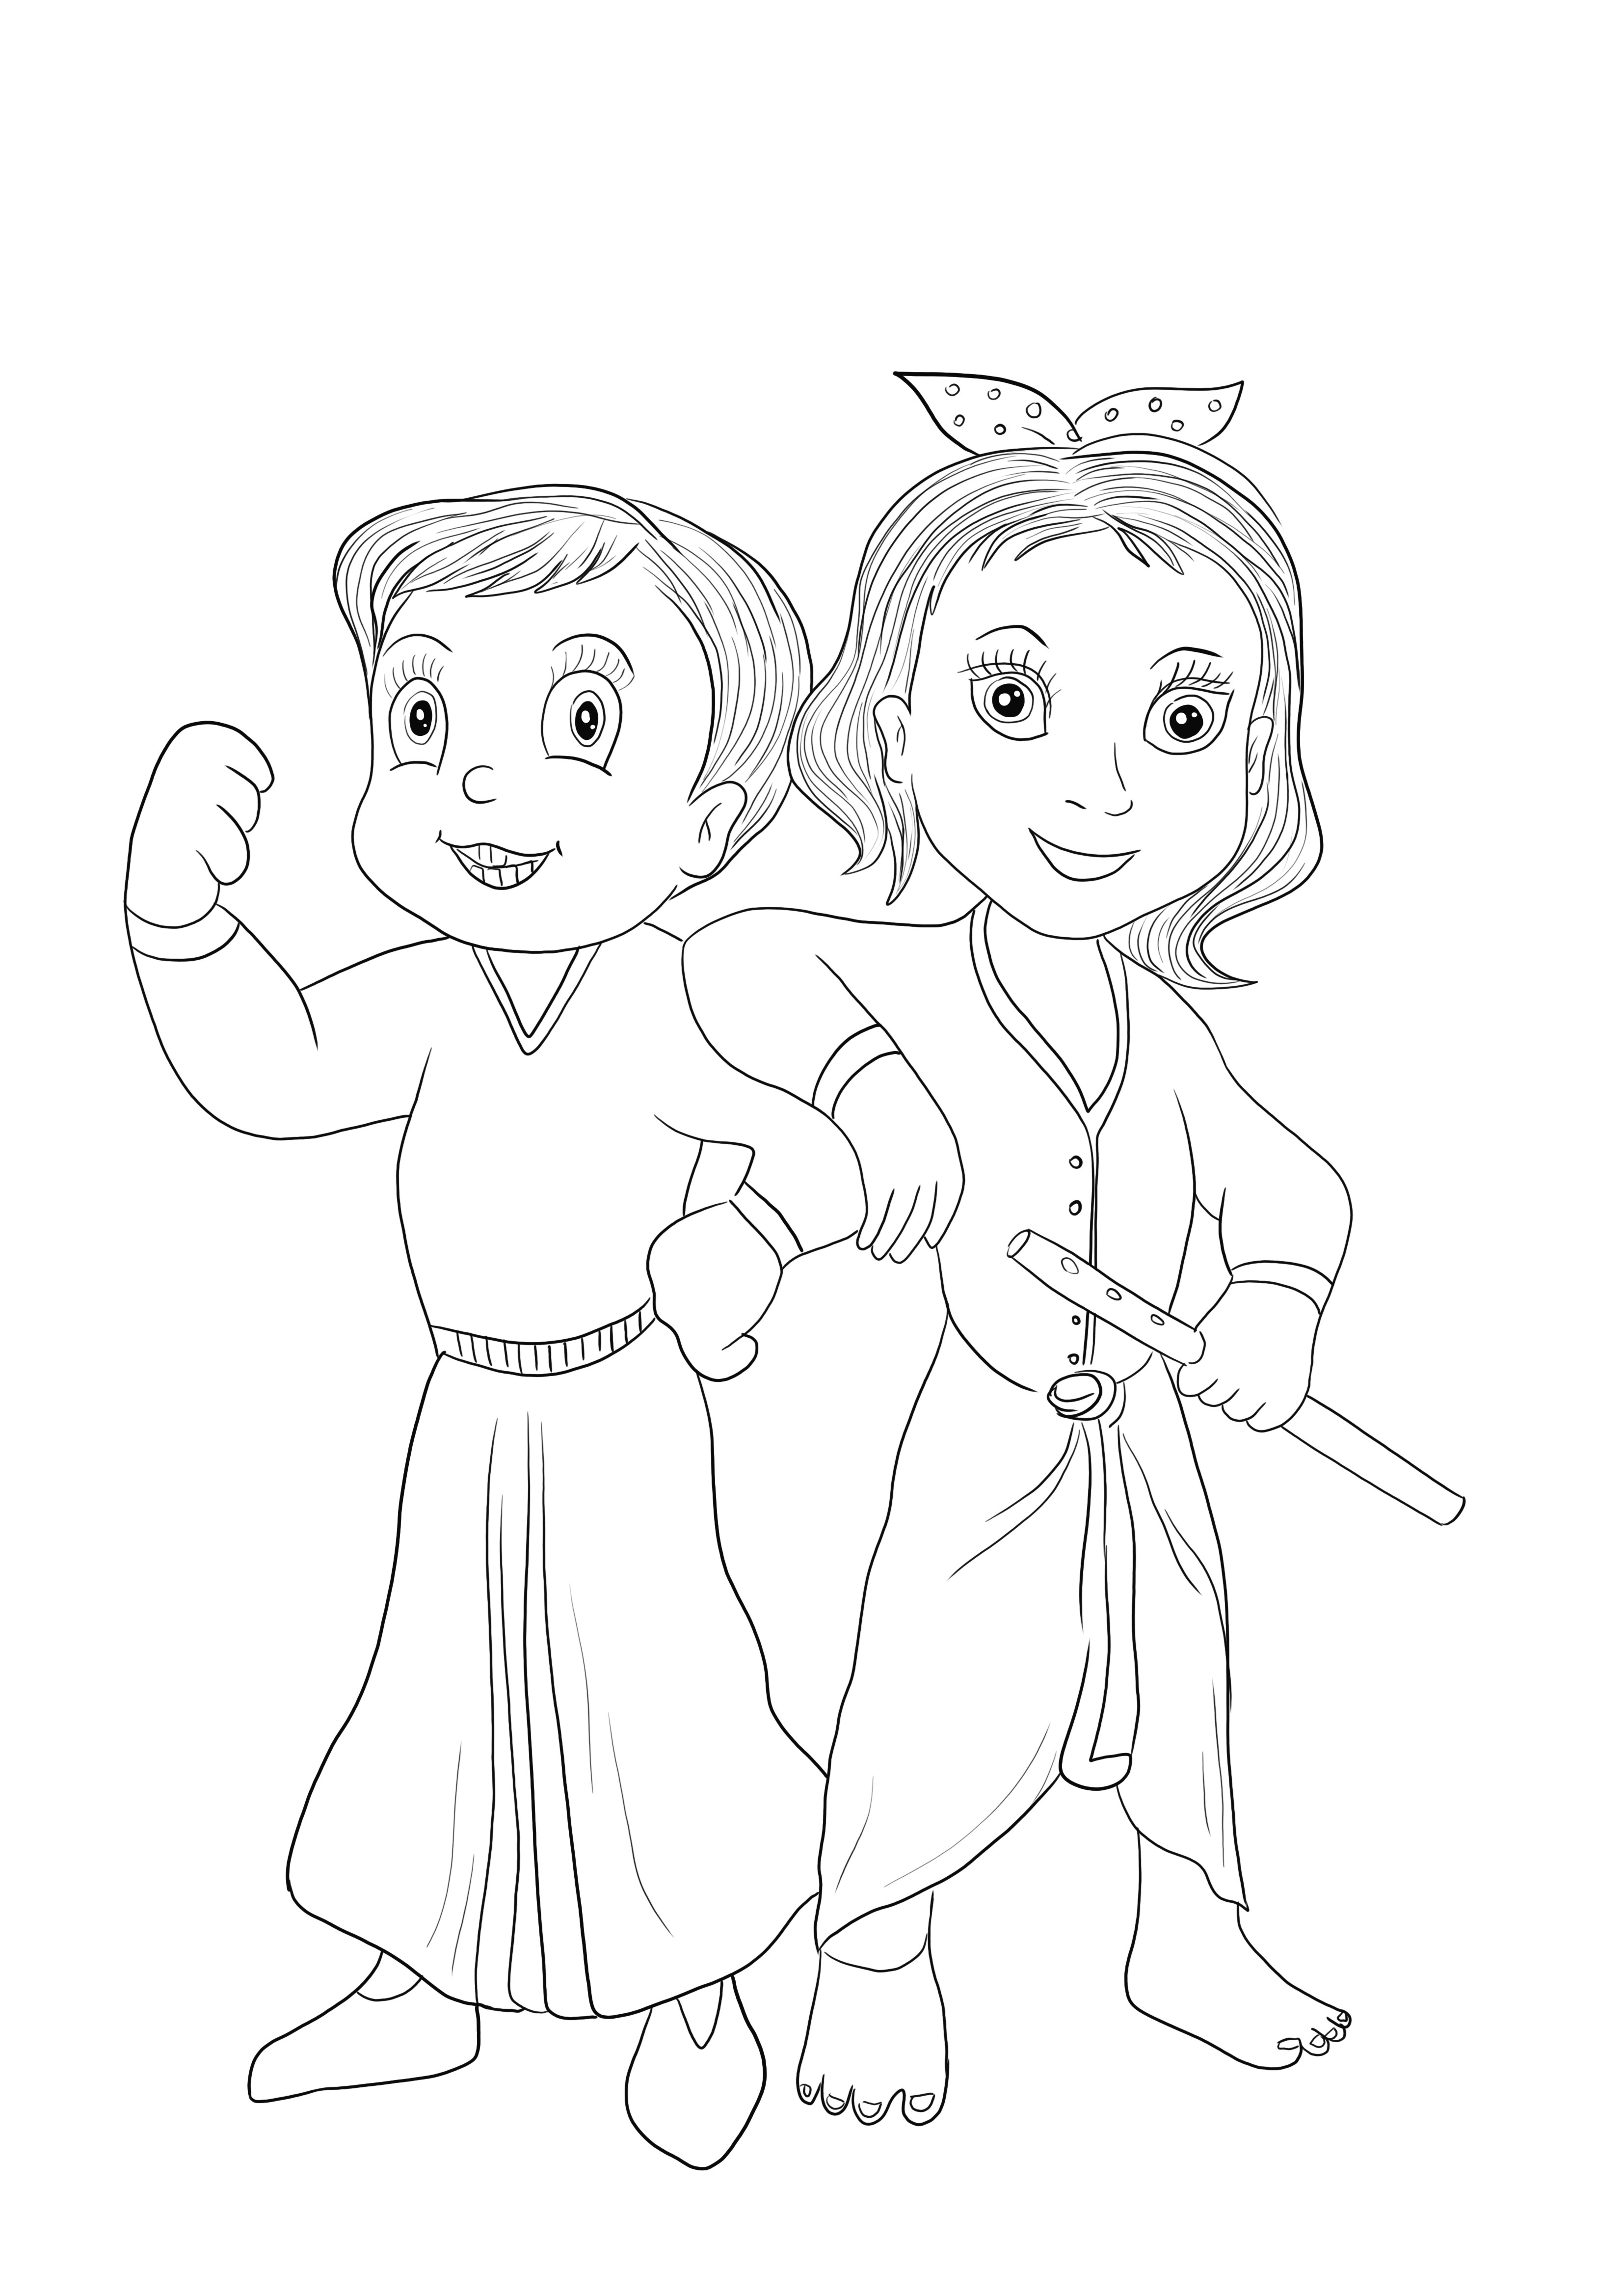 Chhota Bheem és Krishna a Chota Bheem játékból ingyenesen letölthető és egyszerűen színezhető